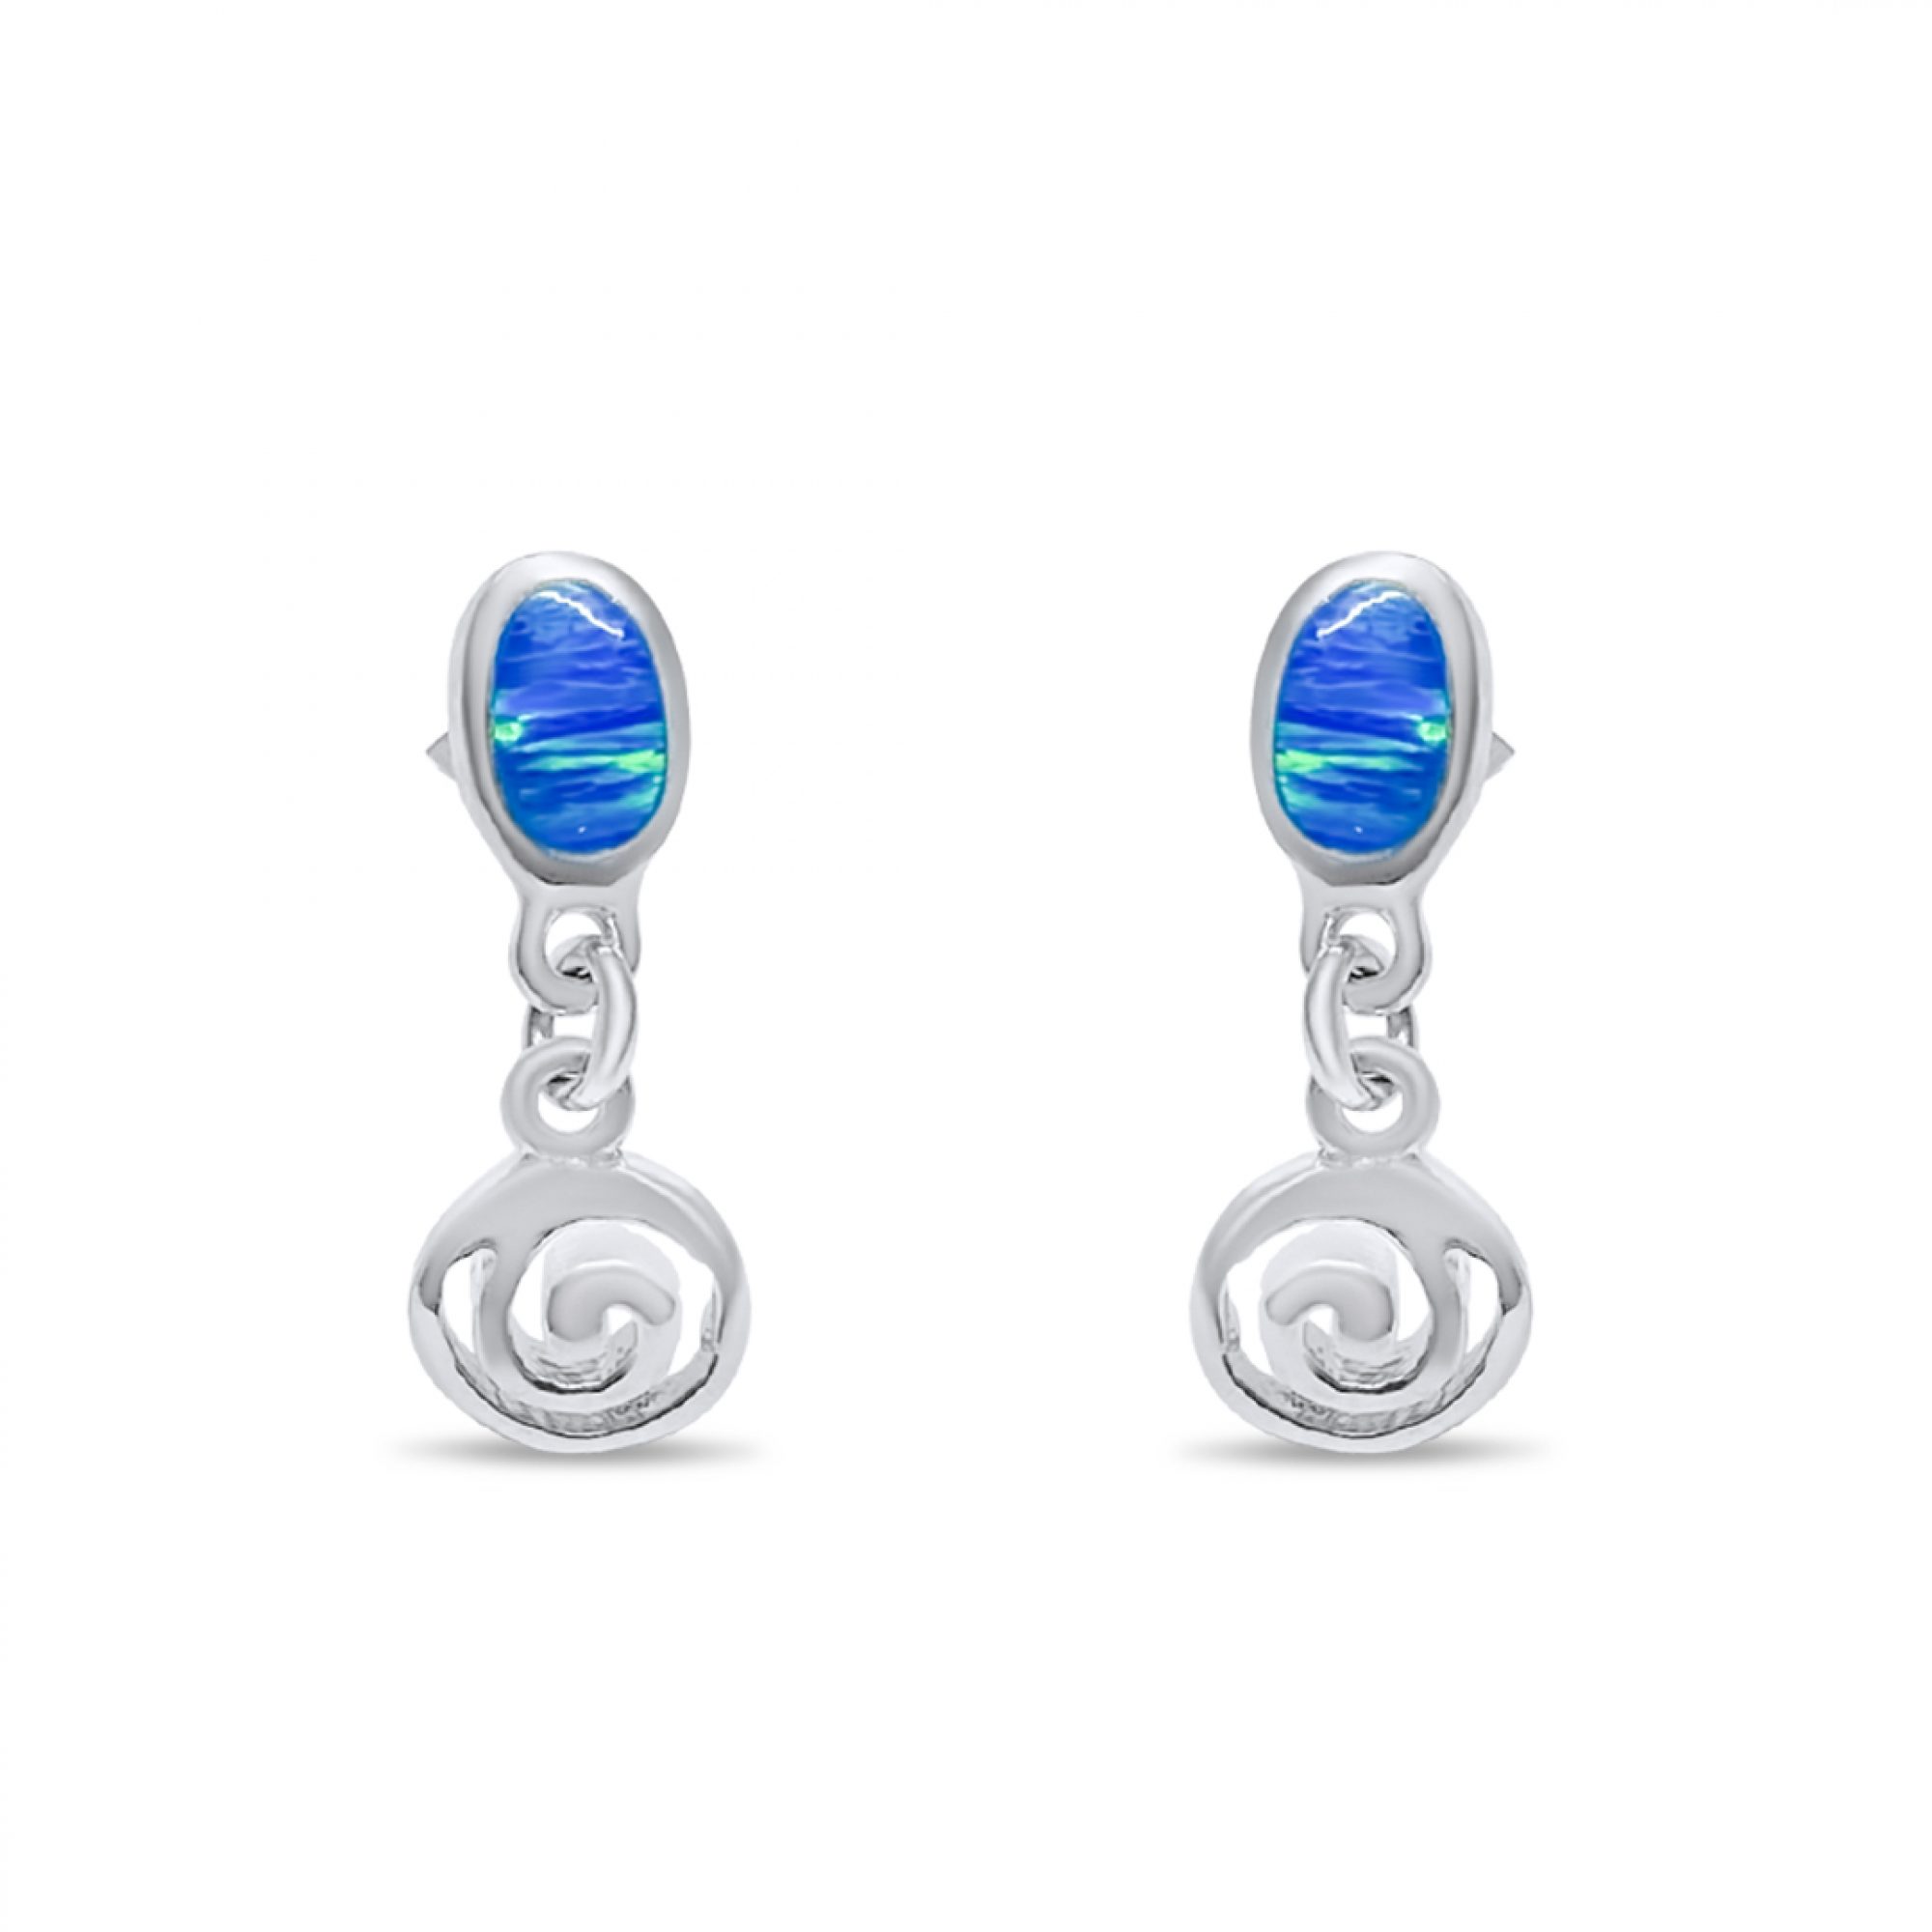 Dangle opal earrings with meander